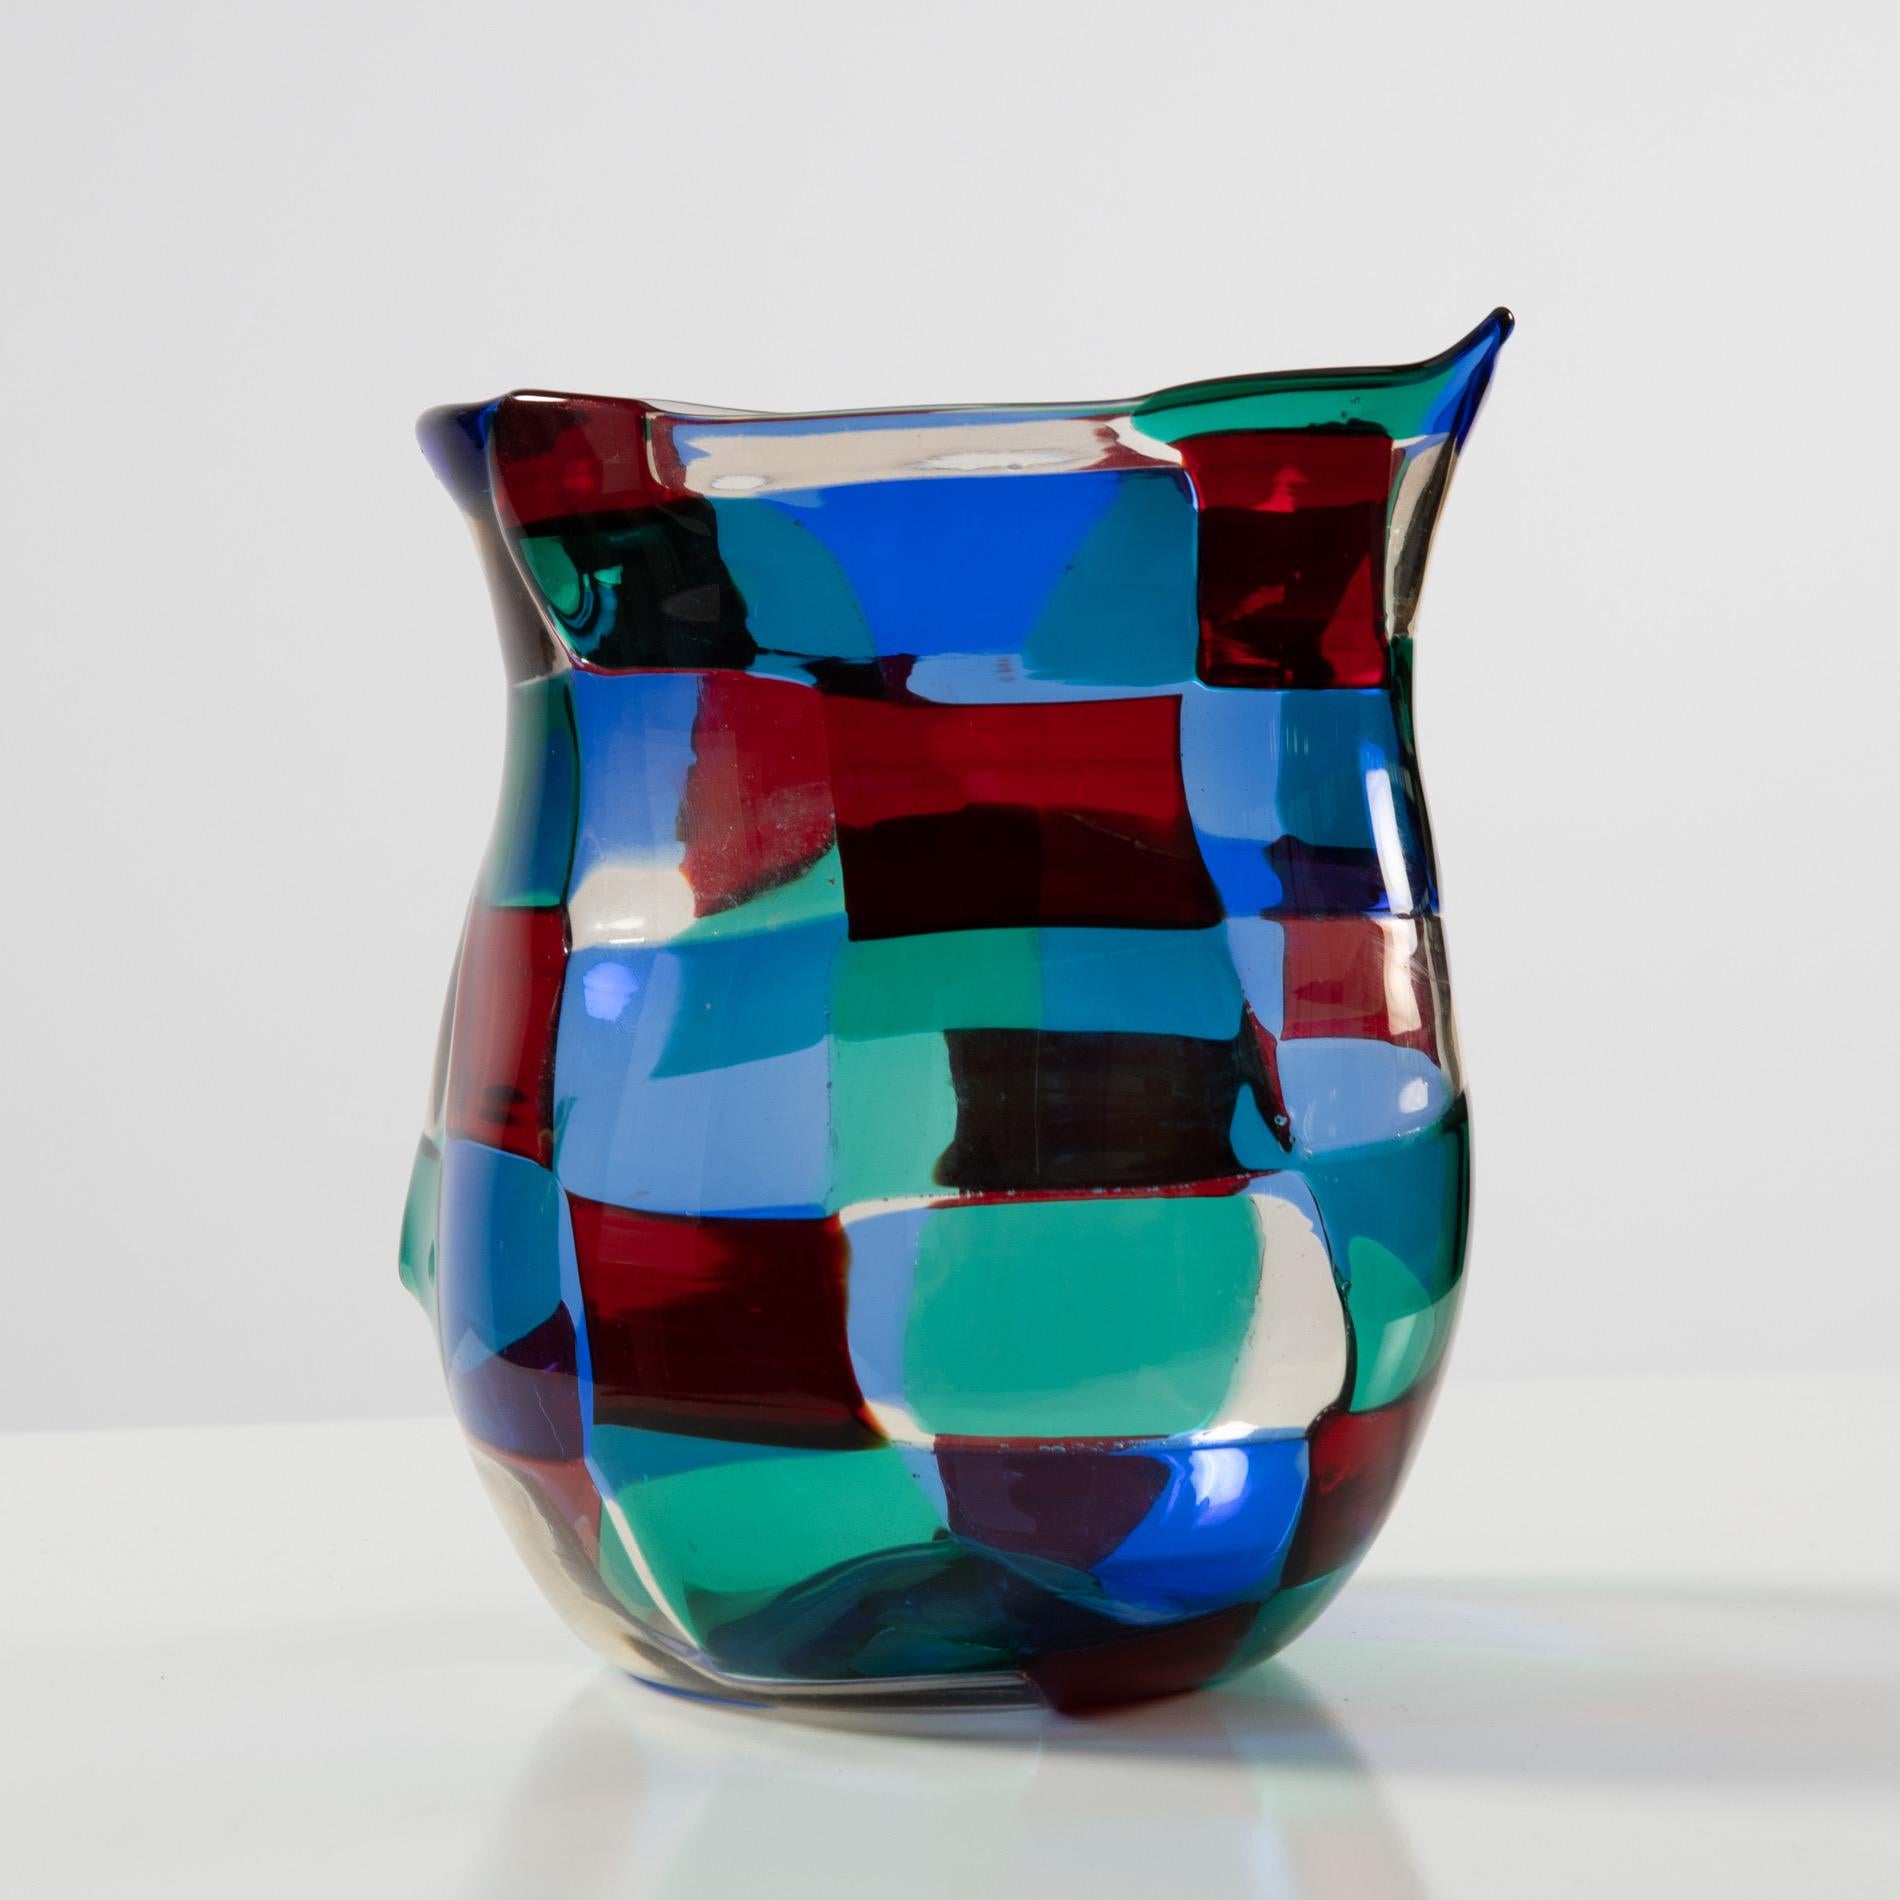 Mid-Century Modern Fulvio Bianconi, “Horned” Pezzato Vase in “Paris” Color Variation, Venini Murano